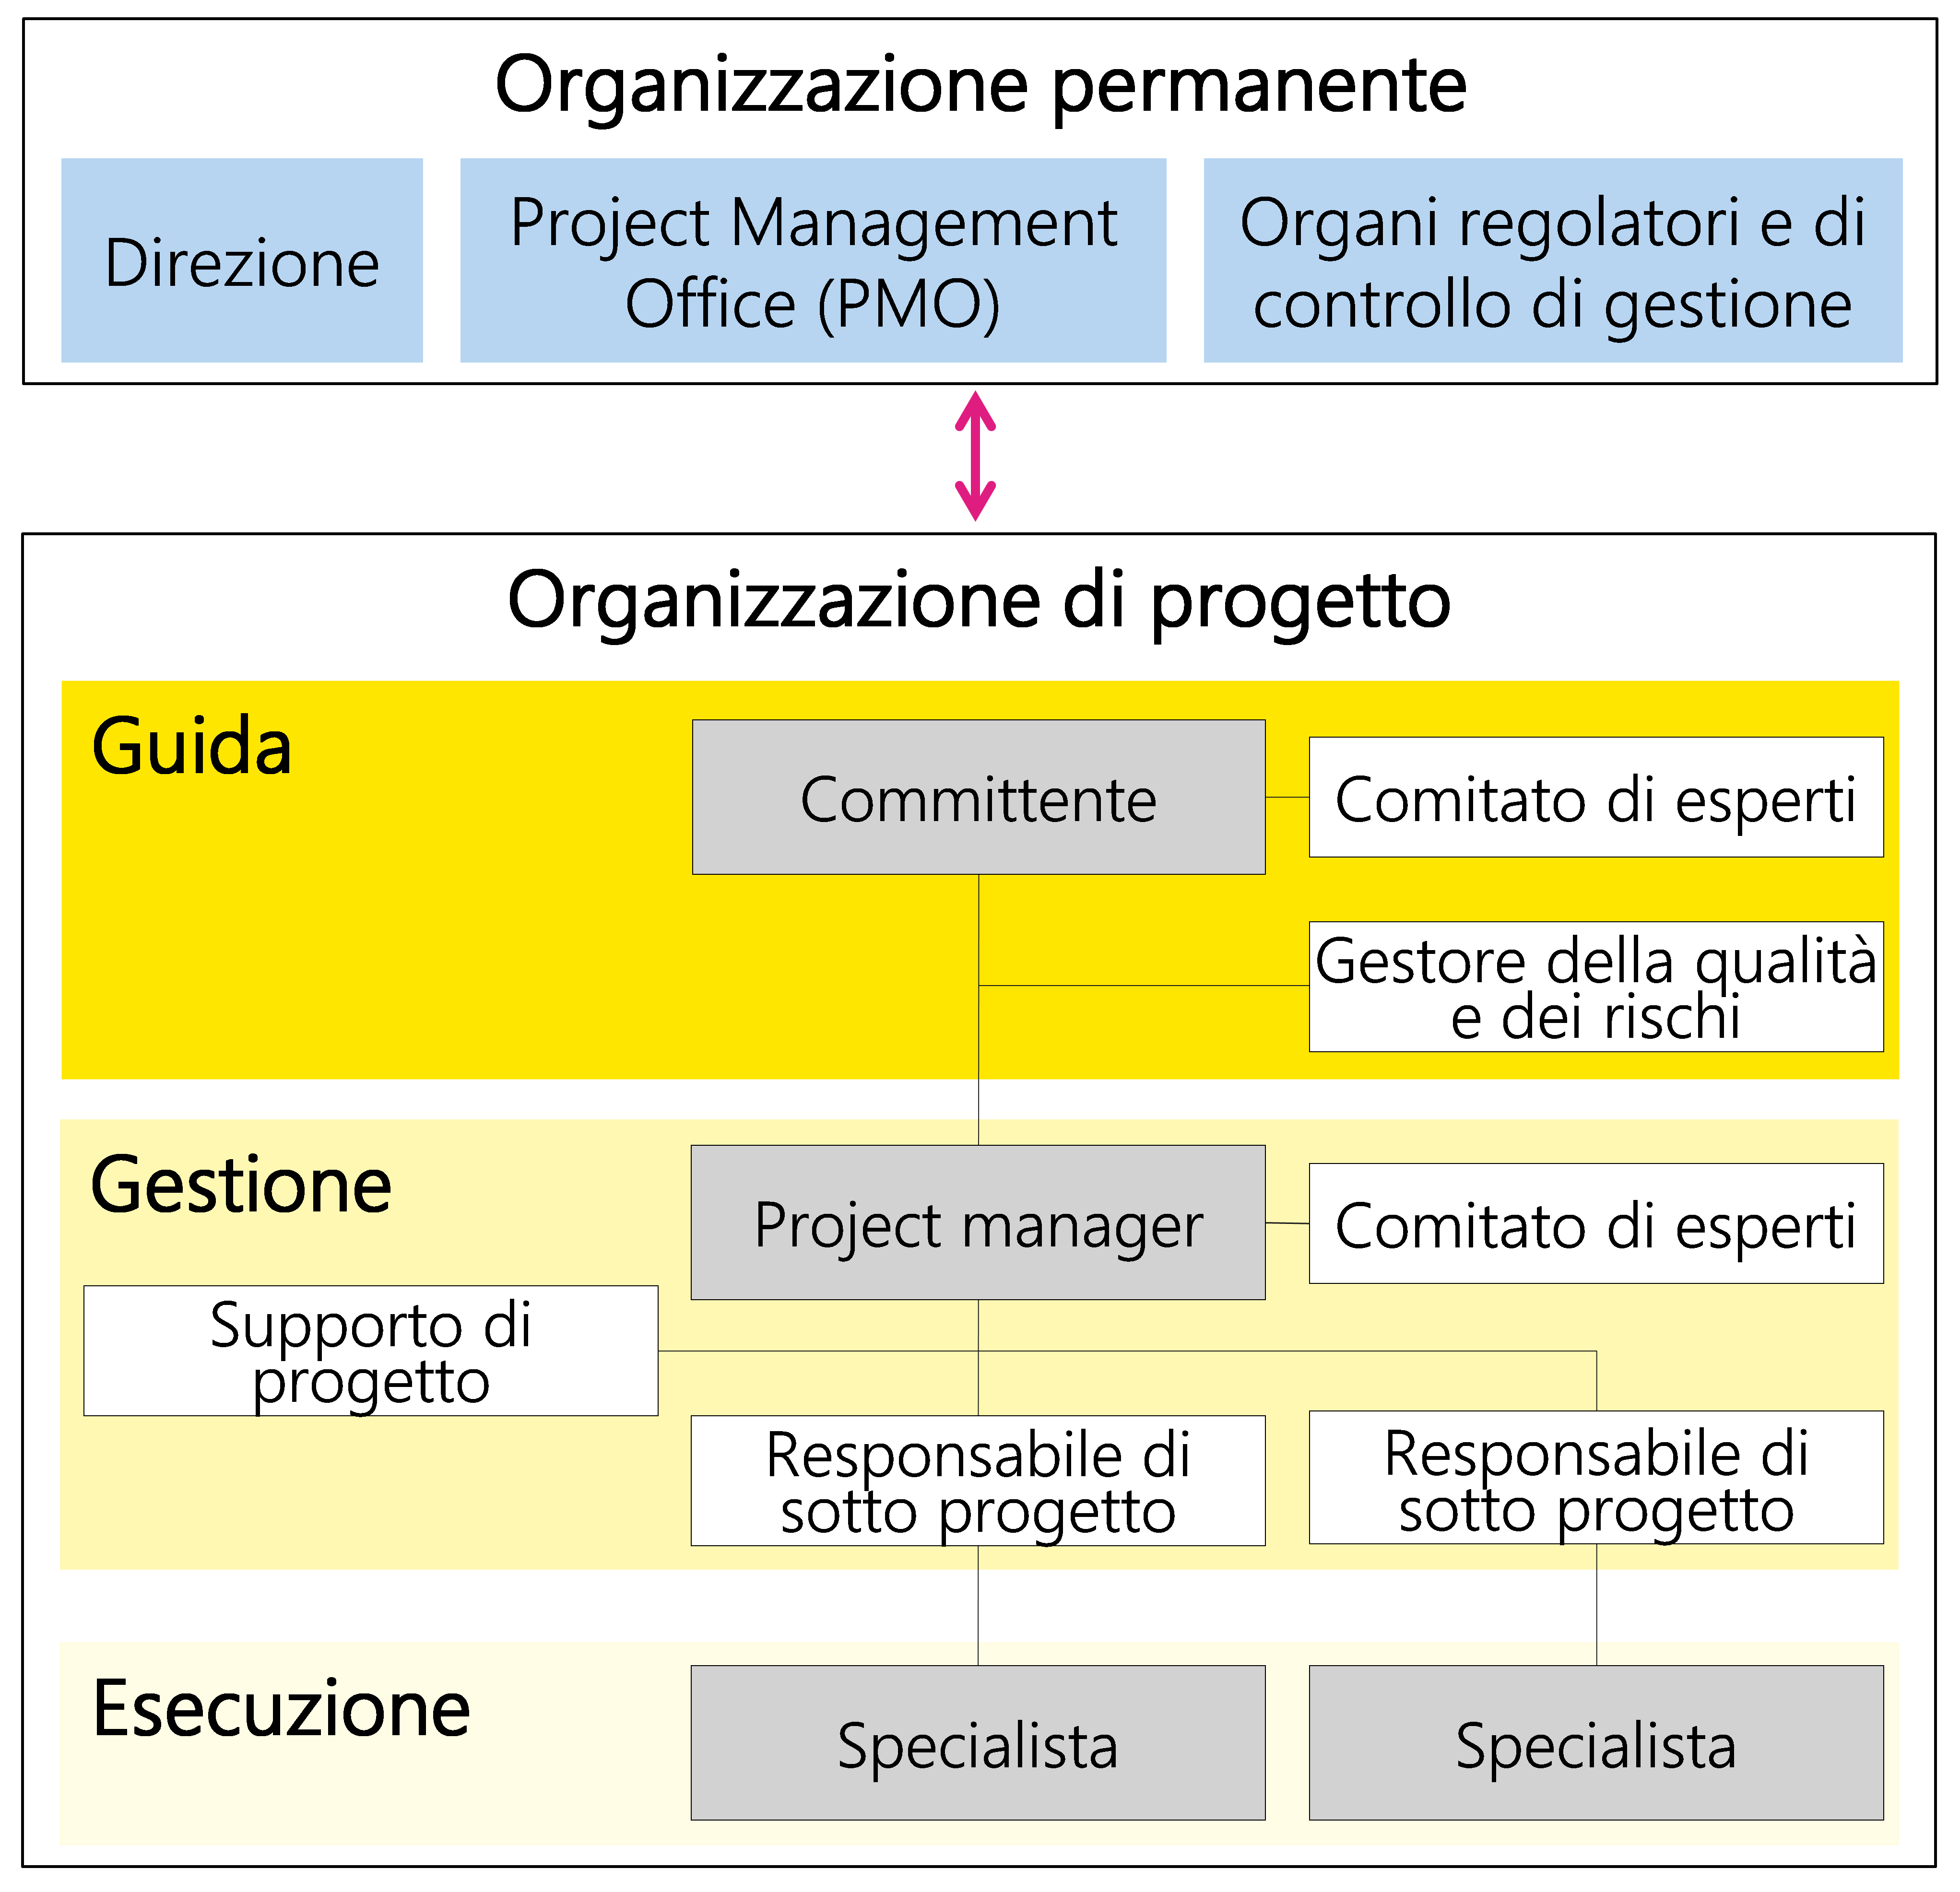 Figura 22: Esempio di organizzazione di progetto con vari ruoli